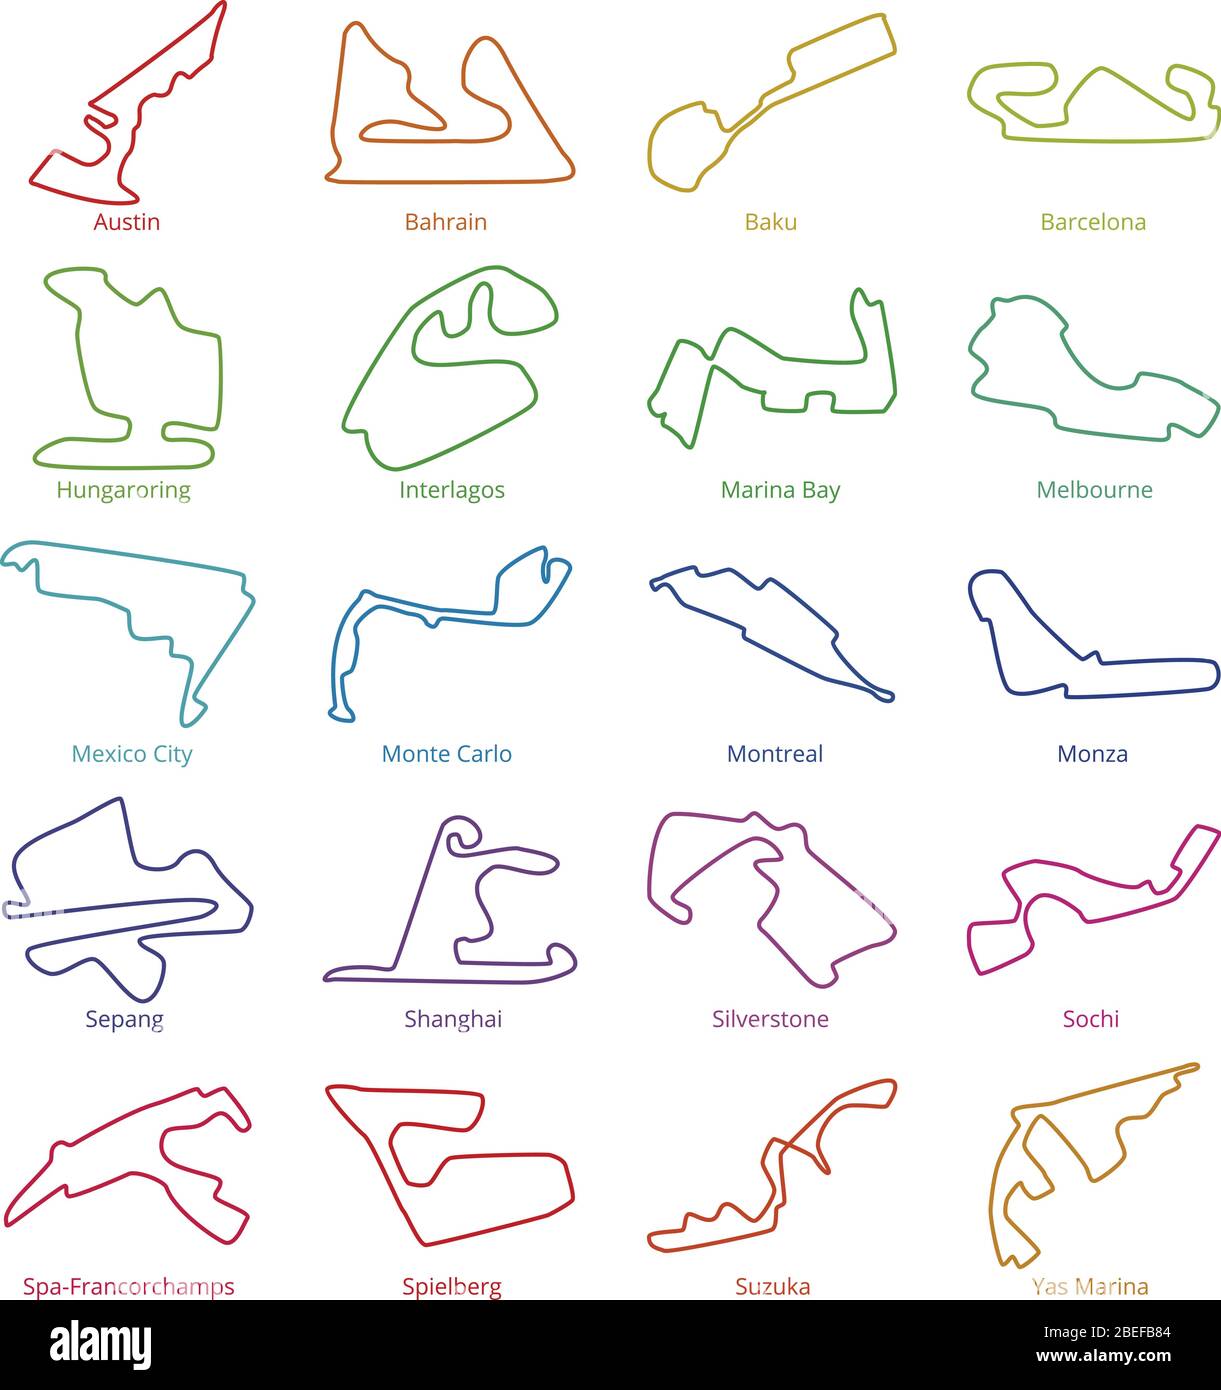 Motorsport-Rennen verfolgt Vektorstrecken. Illustration der Circuit Racetrack Kollektion Stock Vektor